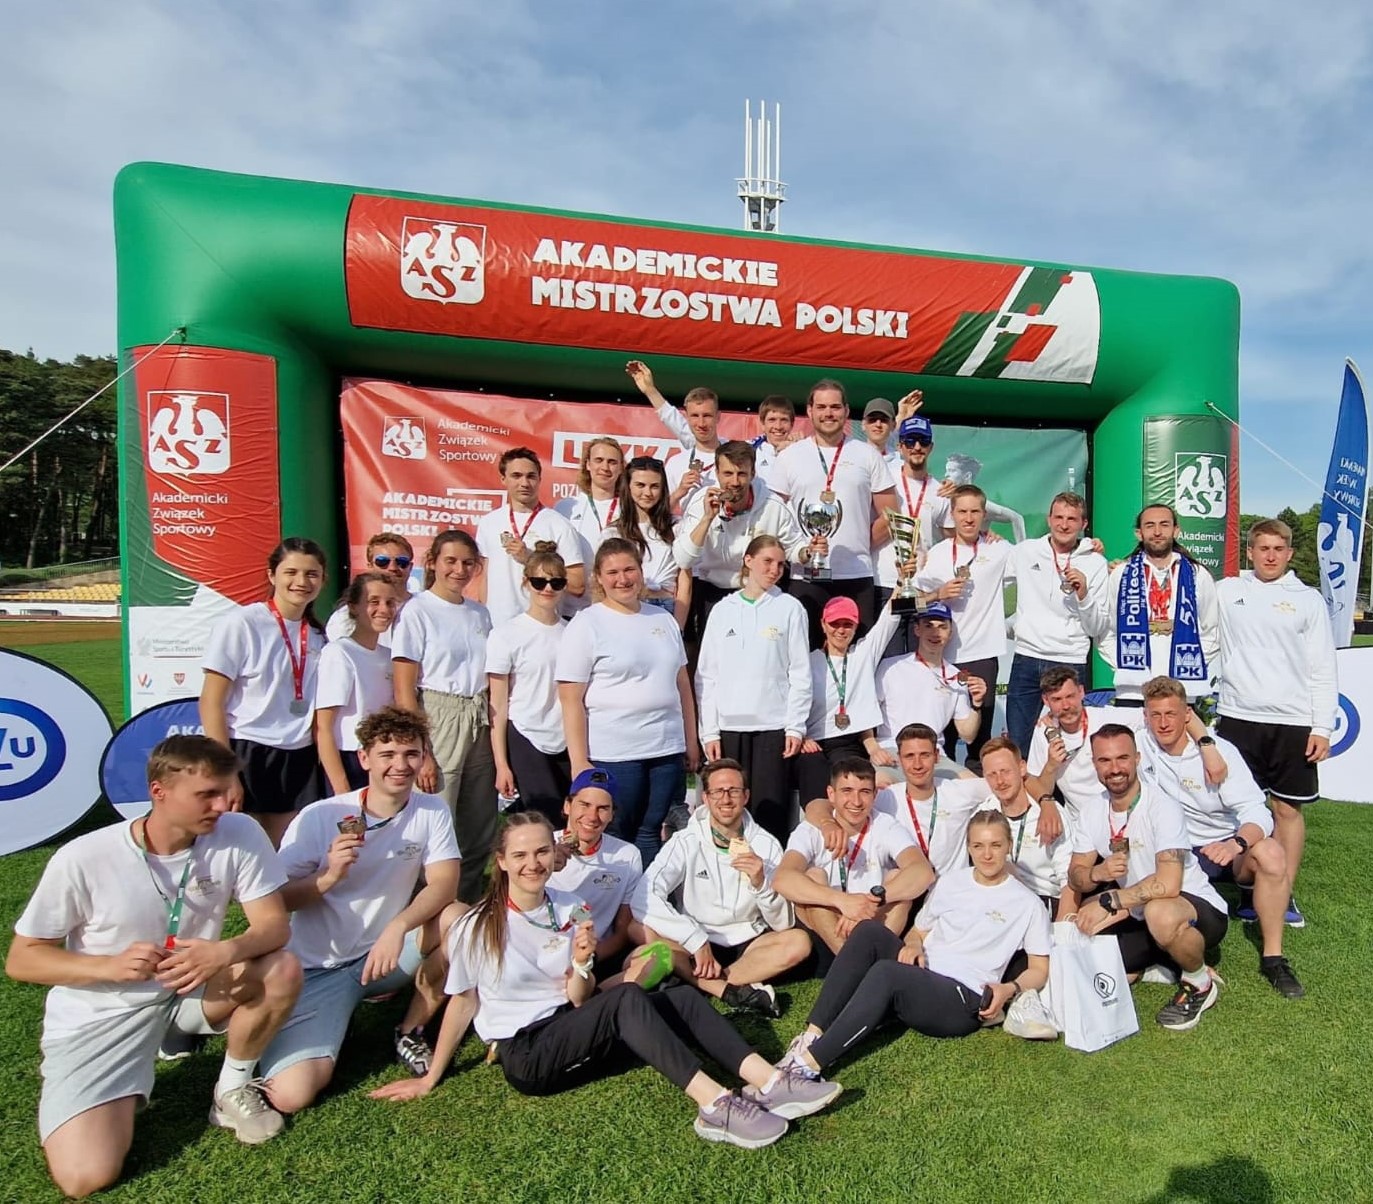 Grupa radosnych ludzi w białych bluzach i t-shirtach. Za nimi napis Akademickie Mistrzostwa Polski.